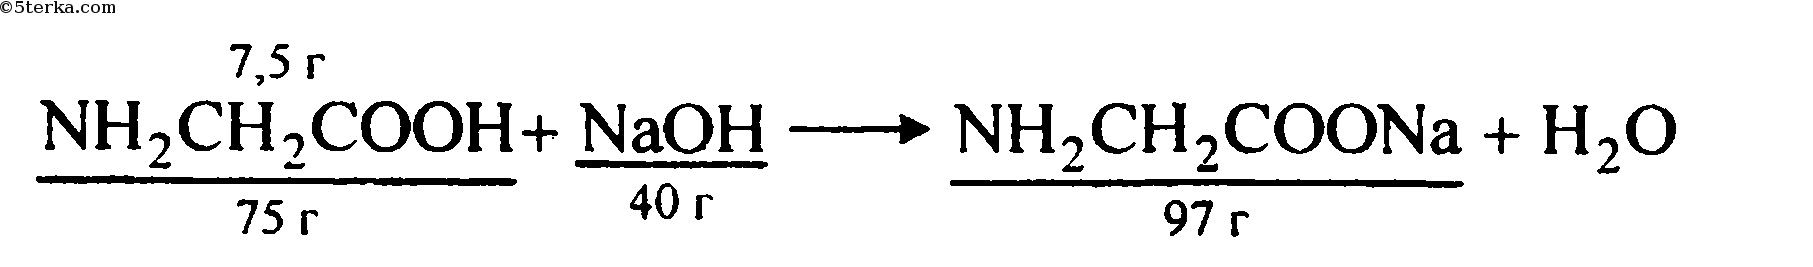 Аминоуксусная кислота реагирует с гидроксидом натрия. Аминоуксусная кислота и гидроксид натрия. Реакция взаимодействия аминоуксусной кислоты с гидроксидом натрия. Взаимодействие аминоуксусной кислоты с гидроксидом натрия. Реакция взаимодействия аминоуксусной кислоты с натрием.